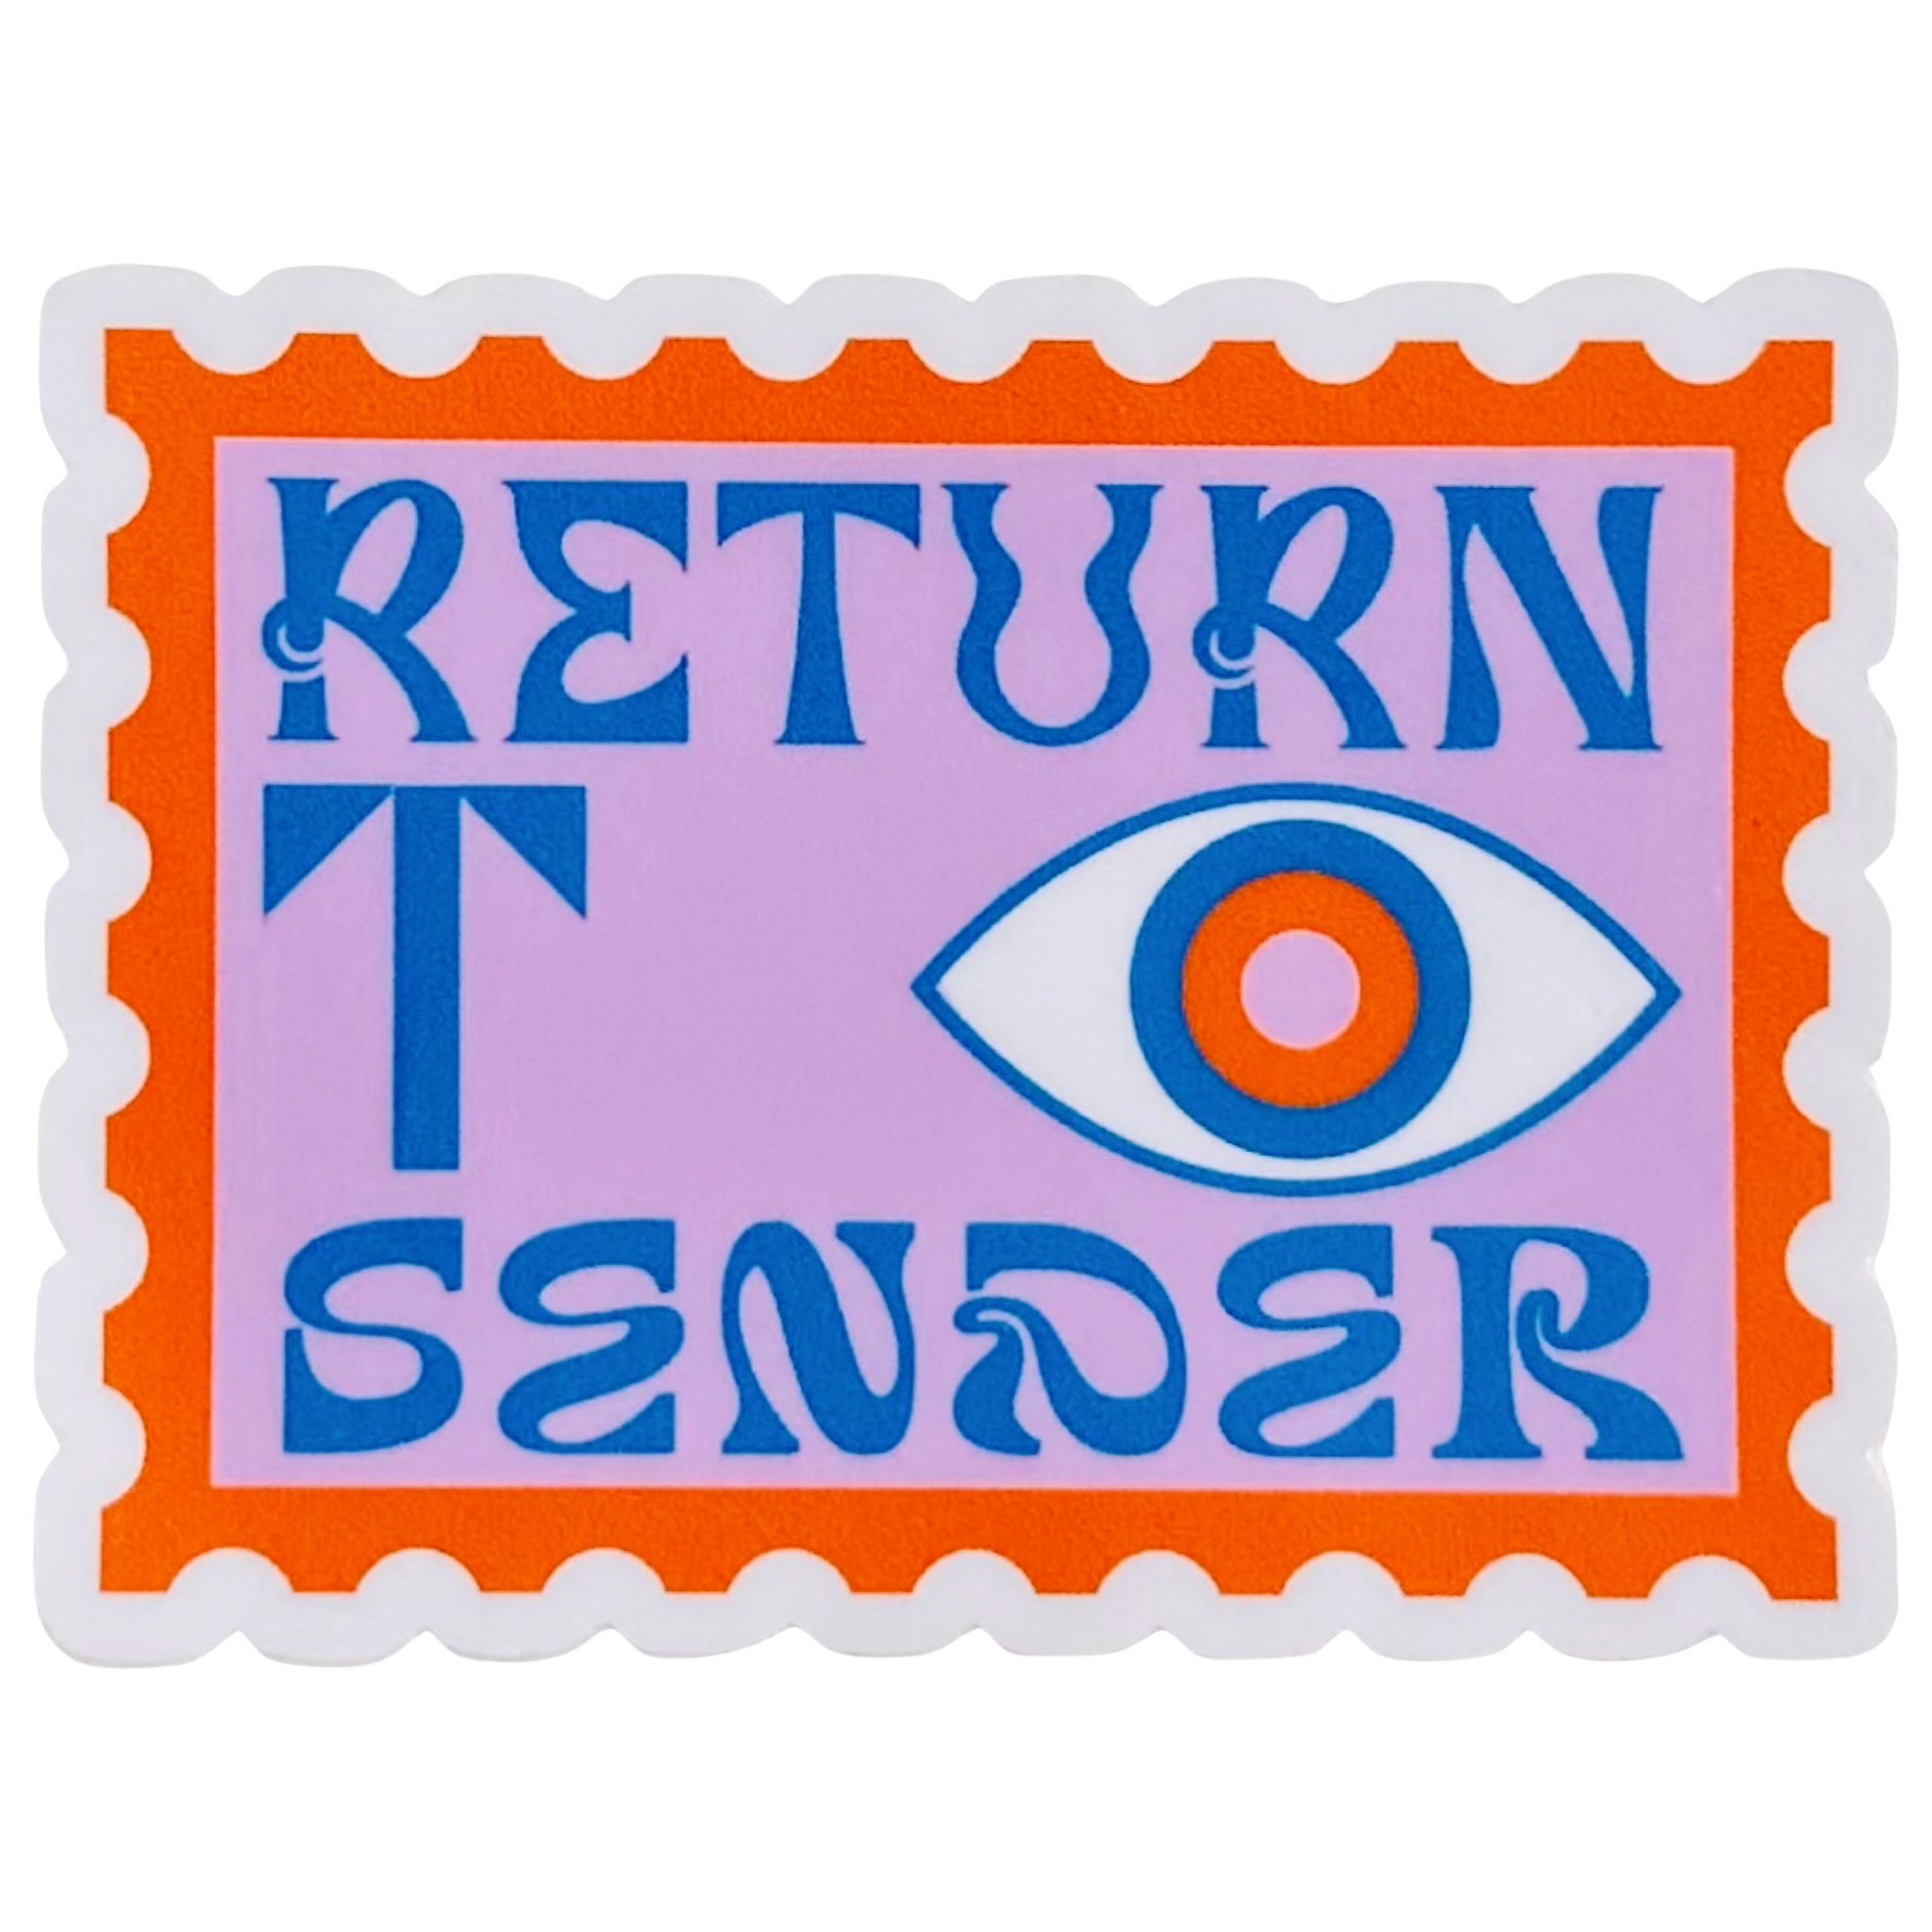 Return To Sender Stamp Sticker